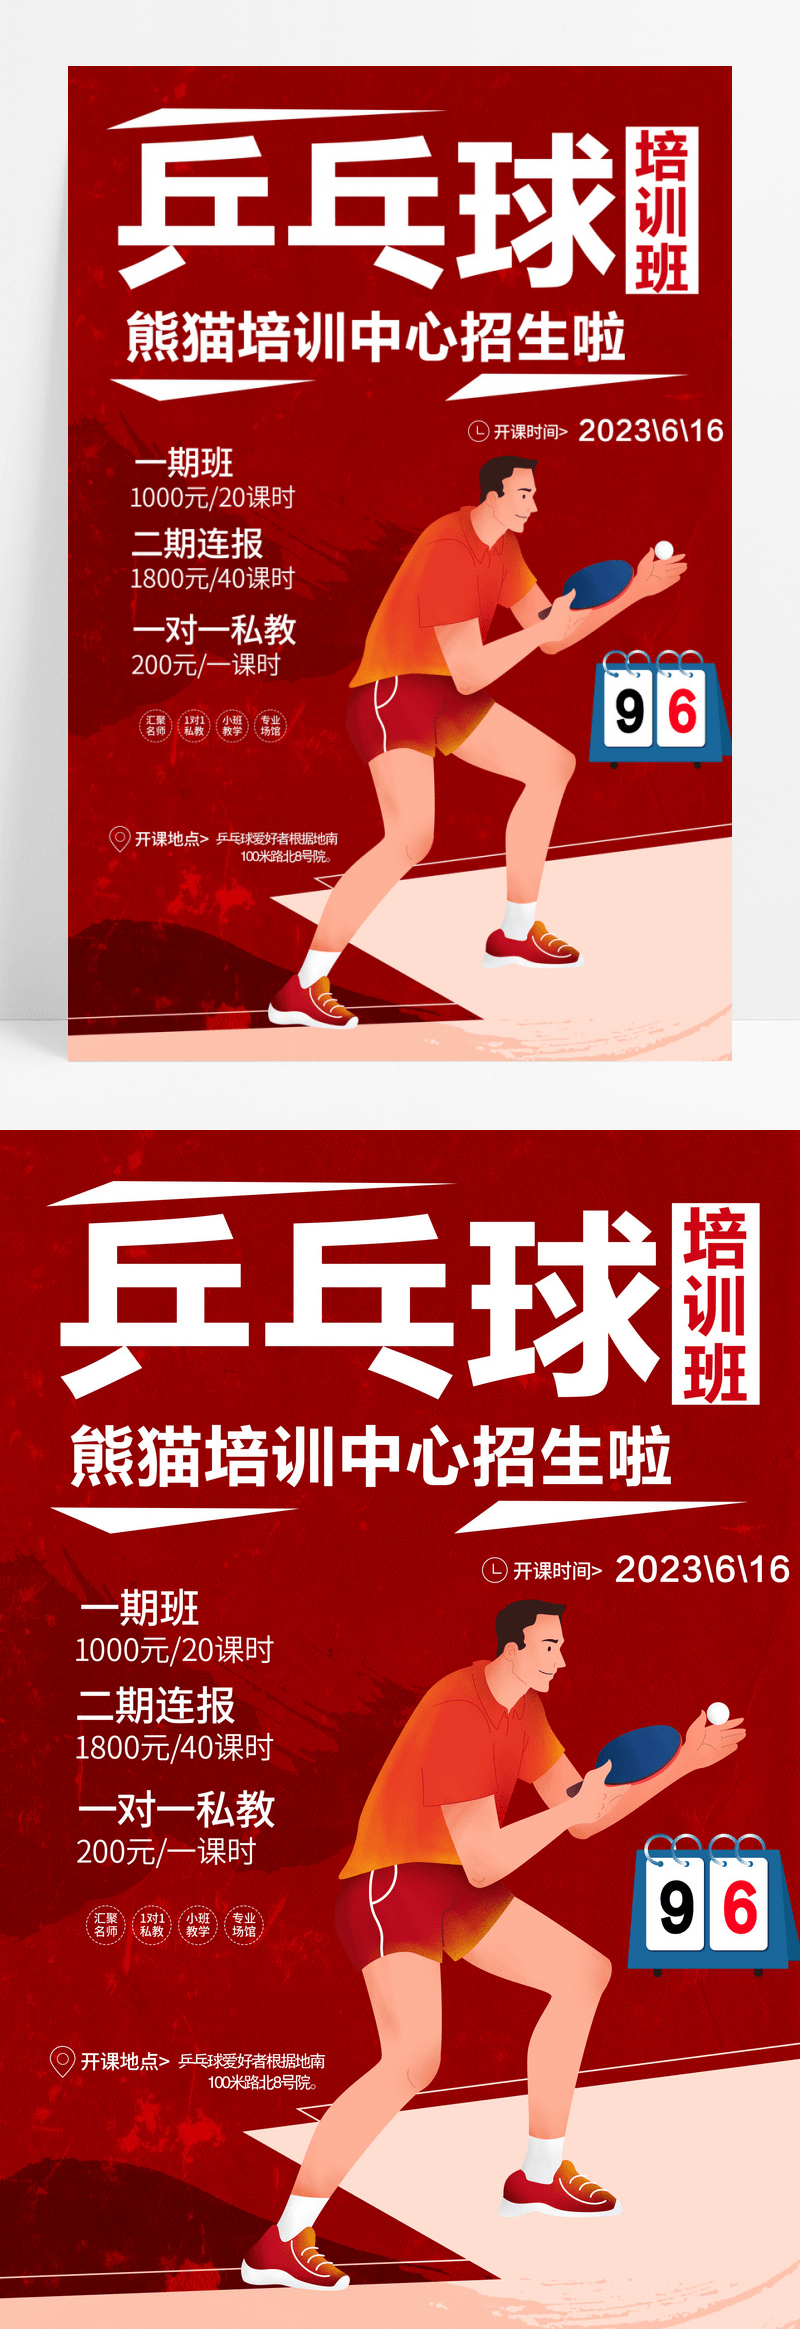 简约风格乒乓球培训招生宣传海报乒乓球海报